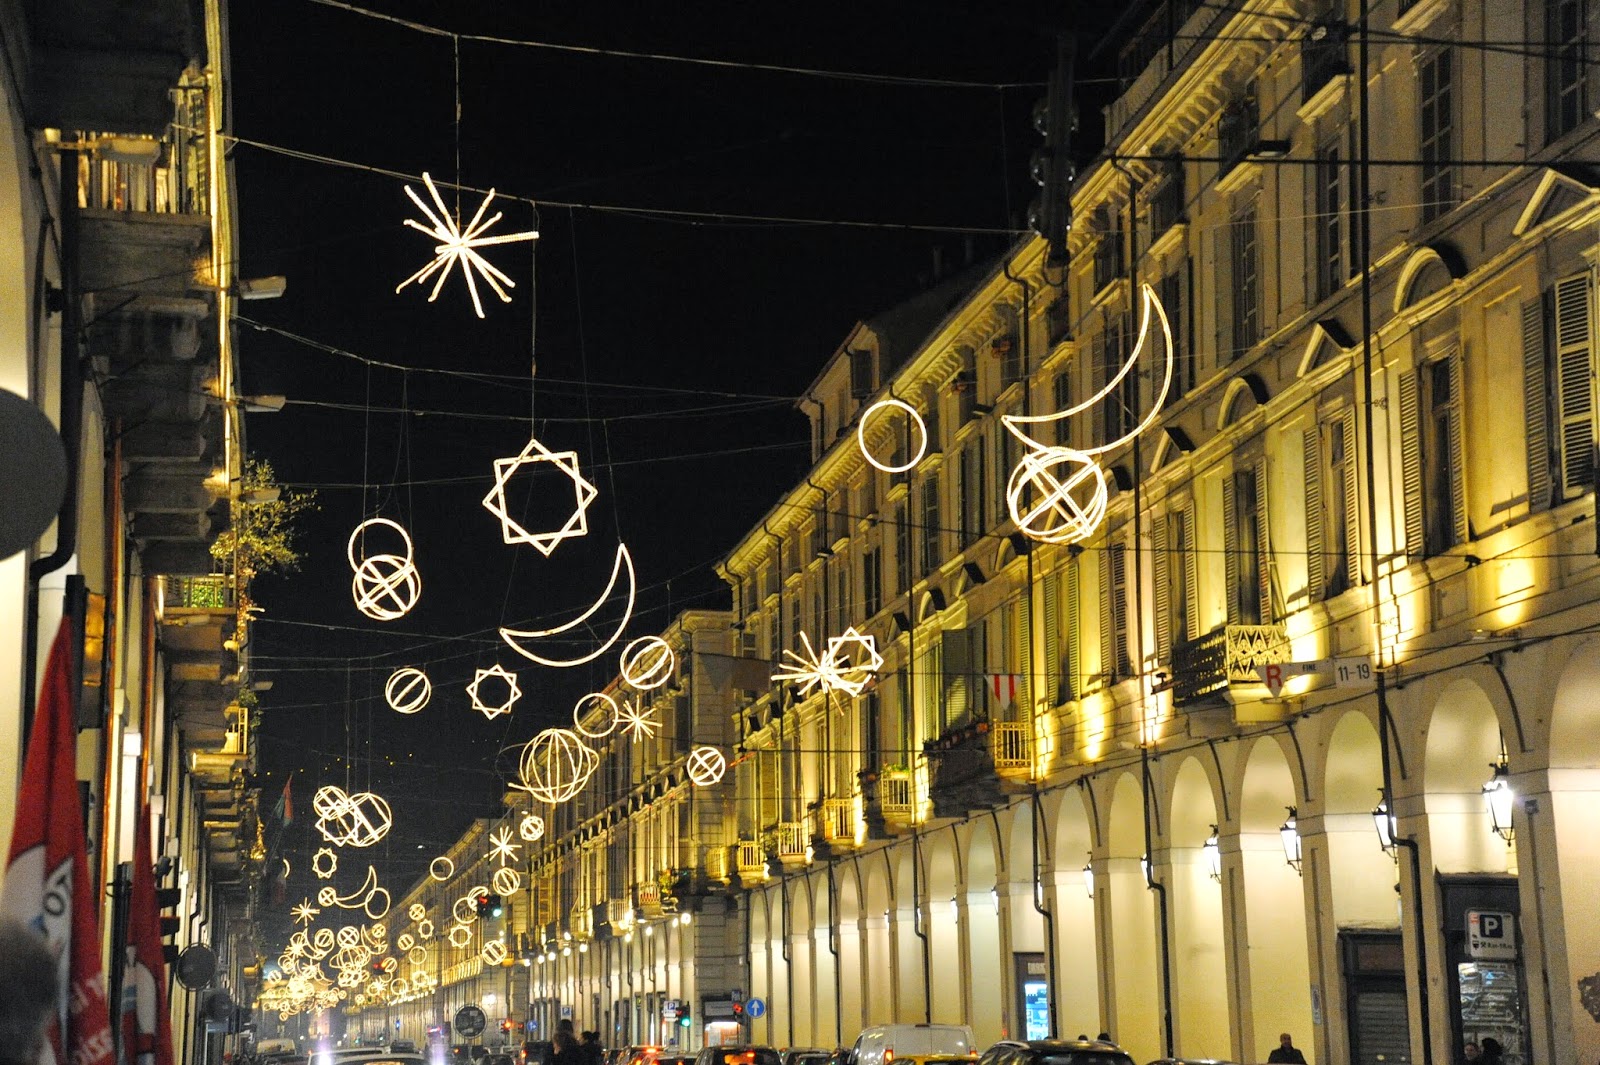 Lo splendore e la magia delle Luci d'Artista a Torino